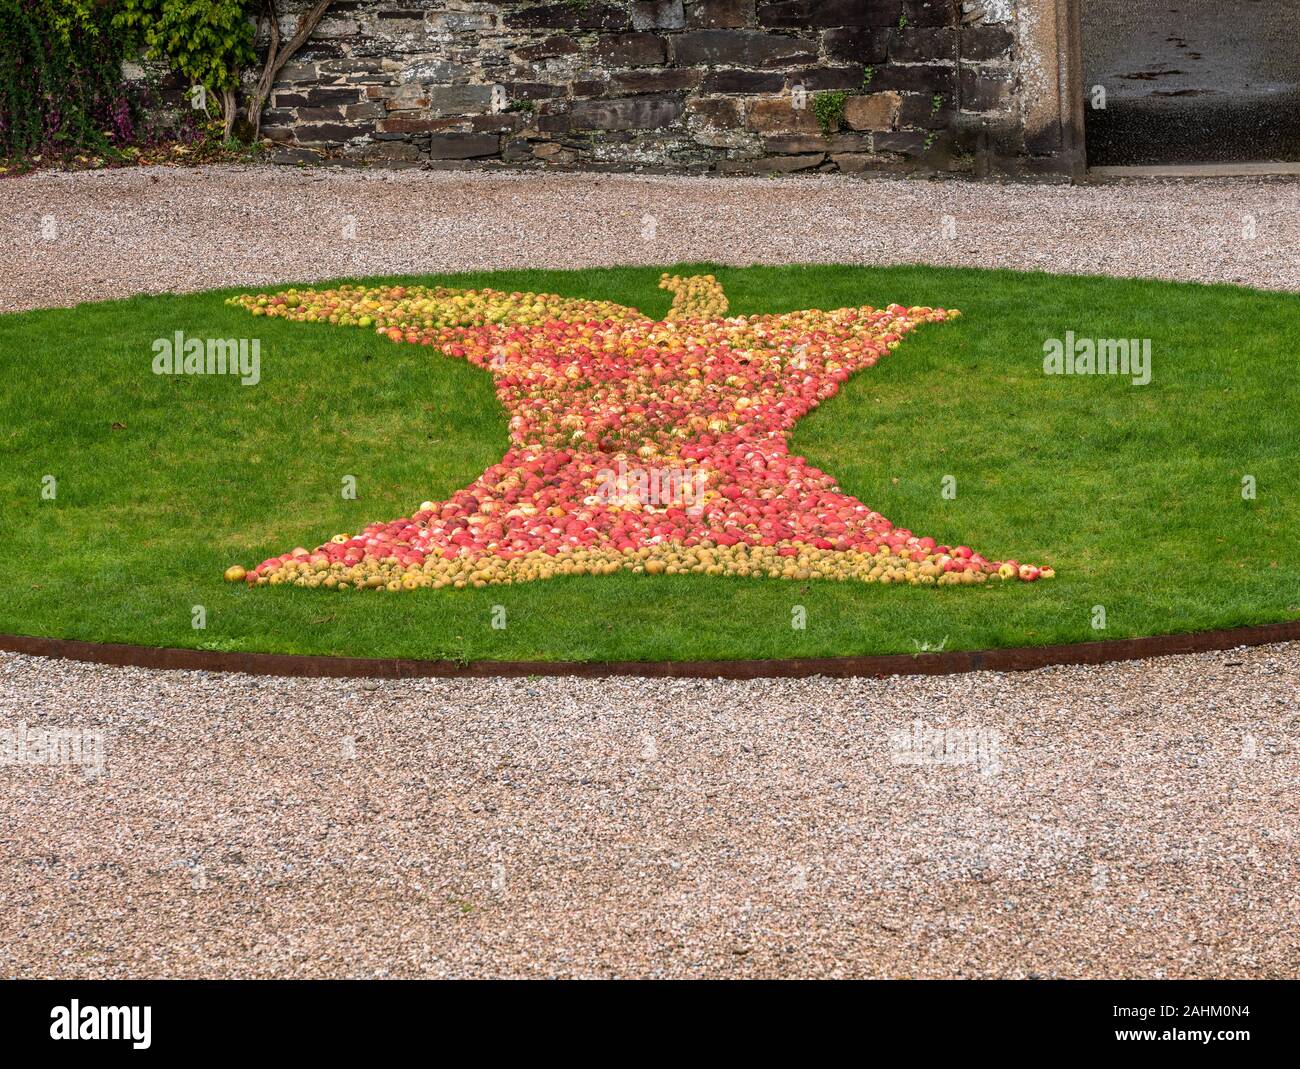 Tavistock, Großbritannien - 29 September 2019: Viele rote und gelbe Äpfel bilden die Form eines halben gegessen Apple auf einem Gras Hintergrund Stockfoto